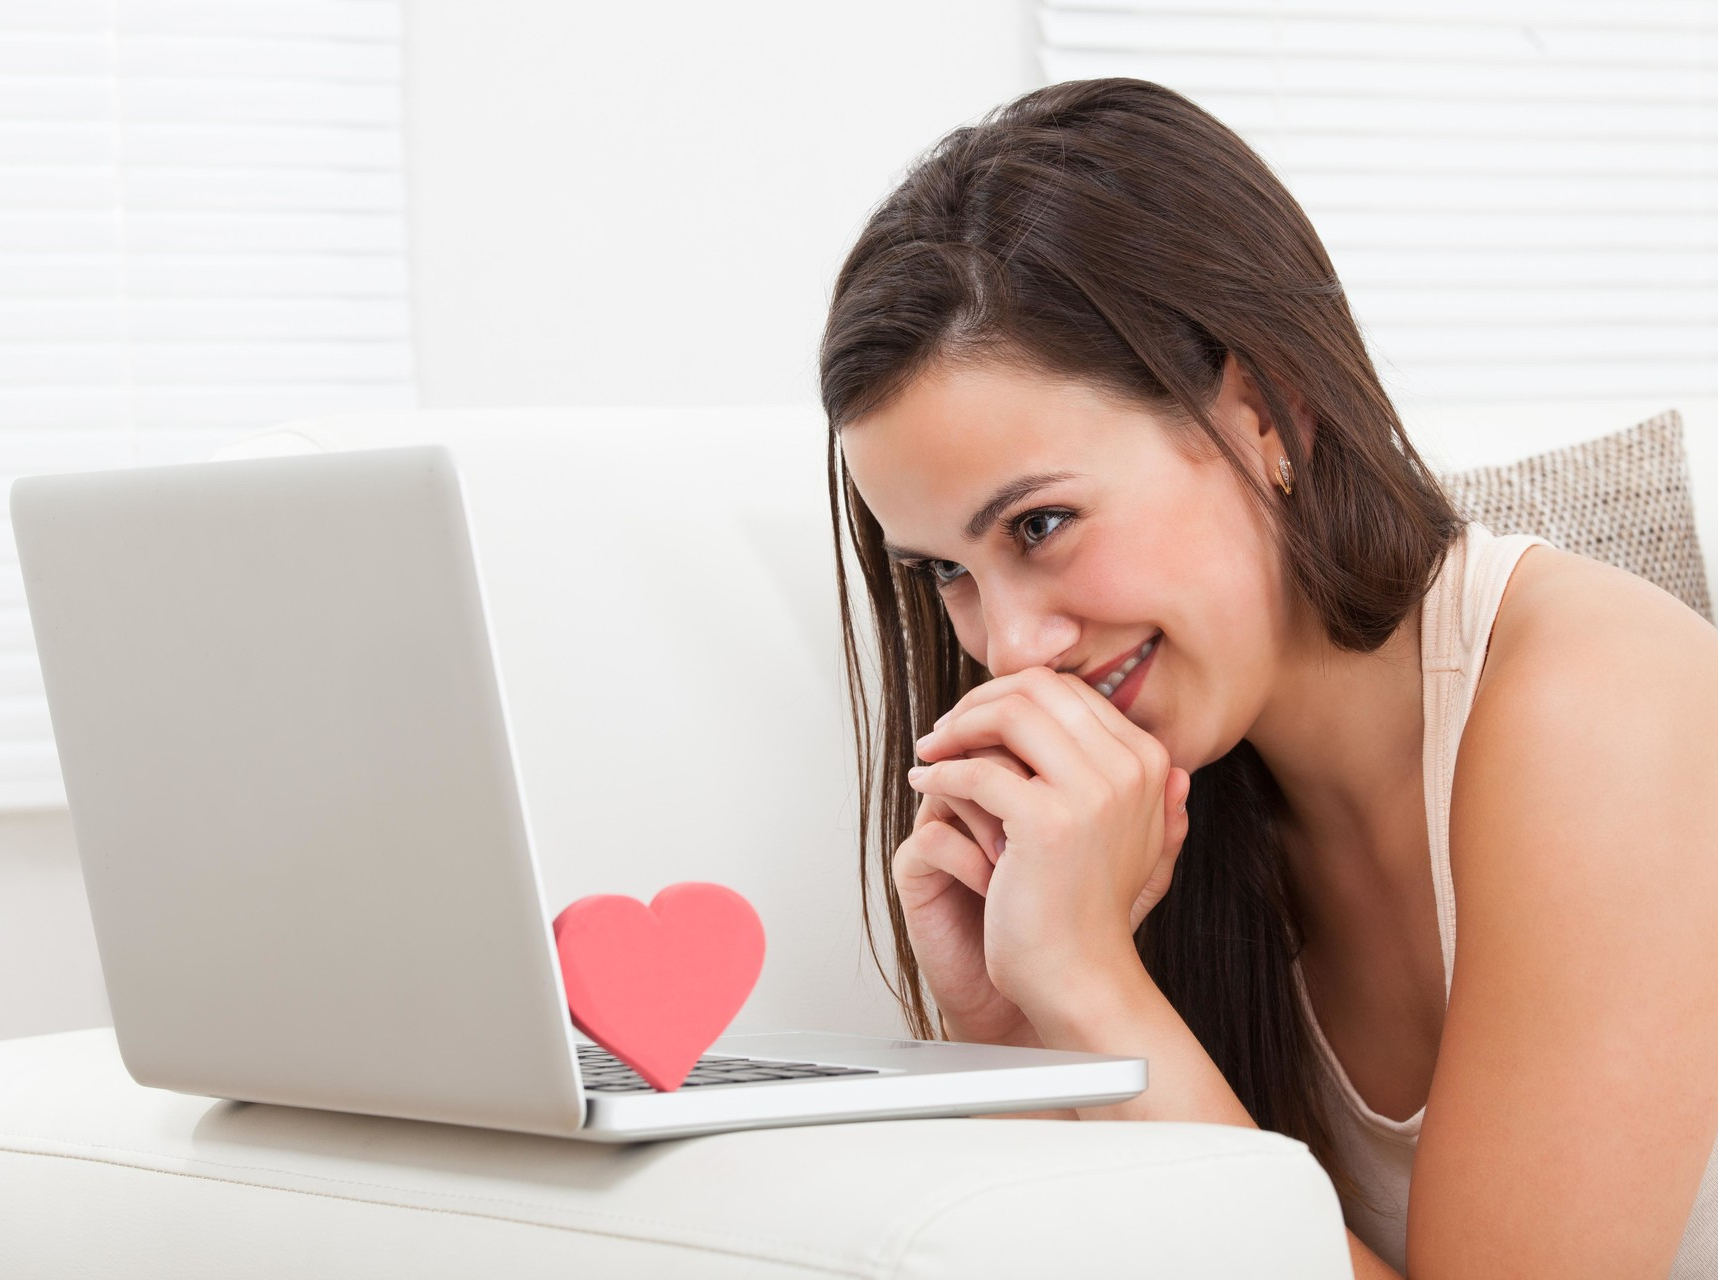 5 мифов об интернет-знакомствах, которые мешают построить счастливыеотношения